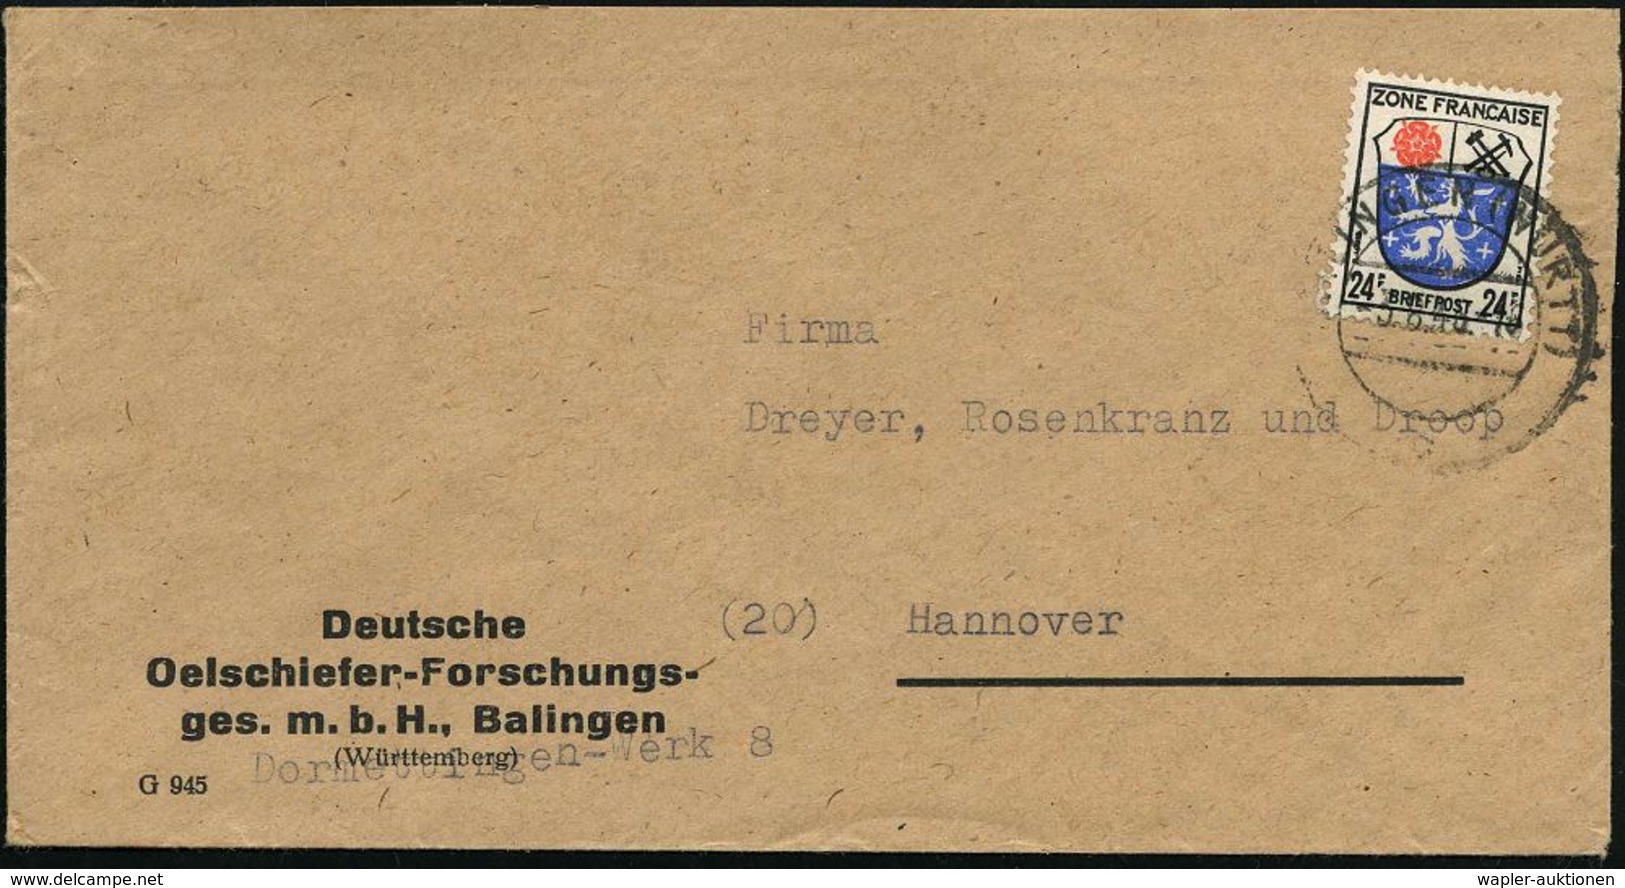 ERDÖL / PROSPEKTIERUNG & GEWINNUNG : BALINGEN (WÜRTT)/ C 1946 (3.8.) 2-Steg Auf Firmen-Bf.: Deutsches Oelschiefer-Forsch - Oil